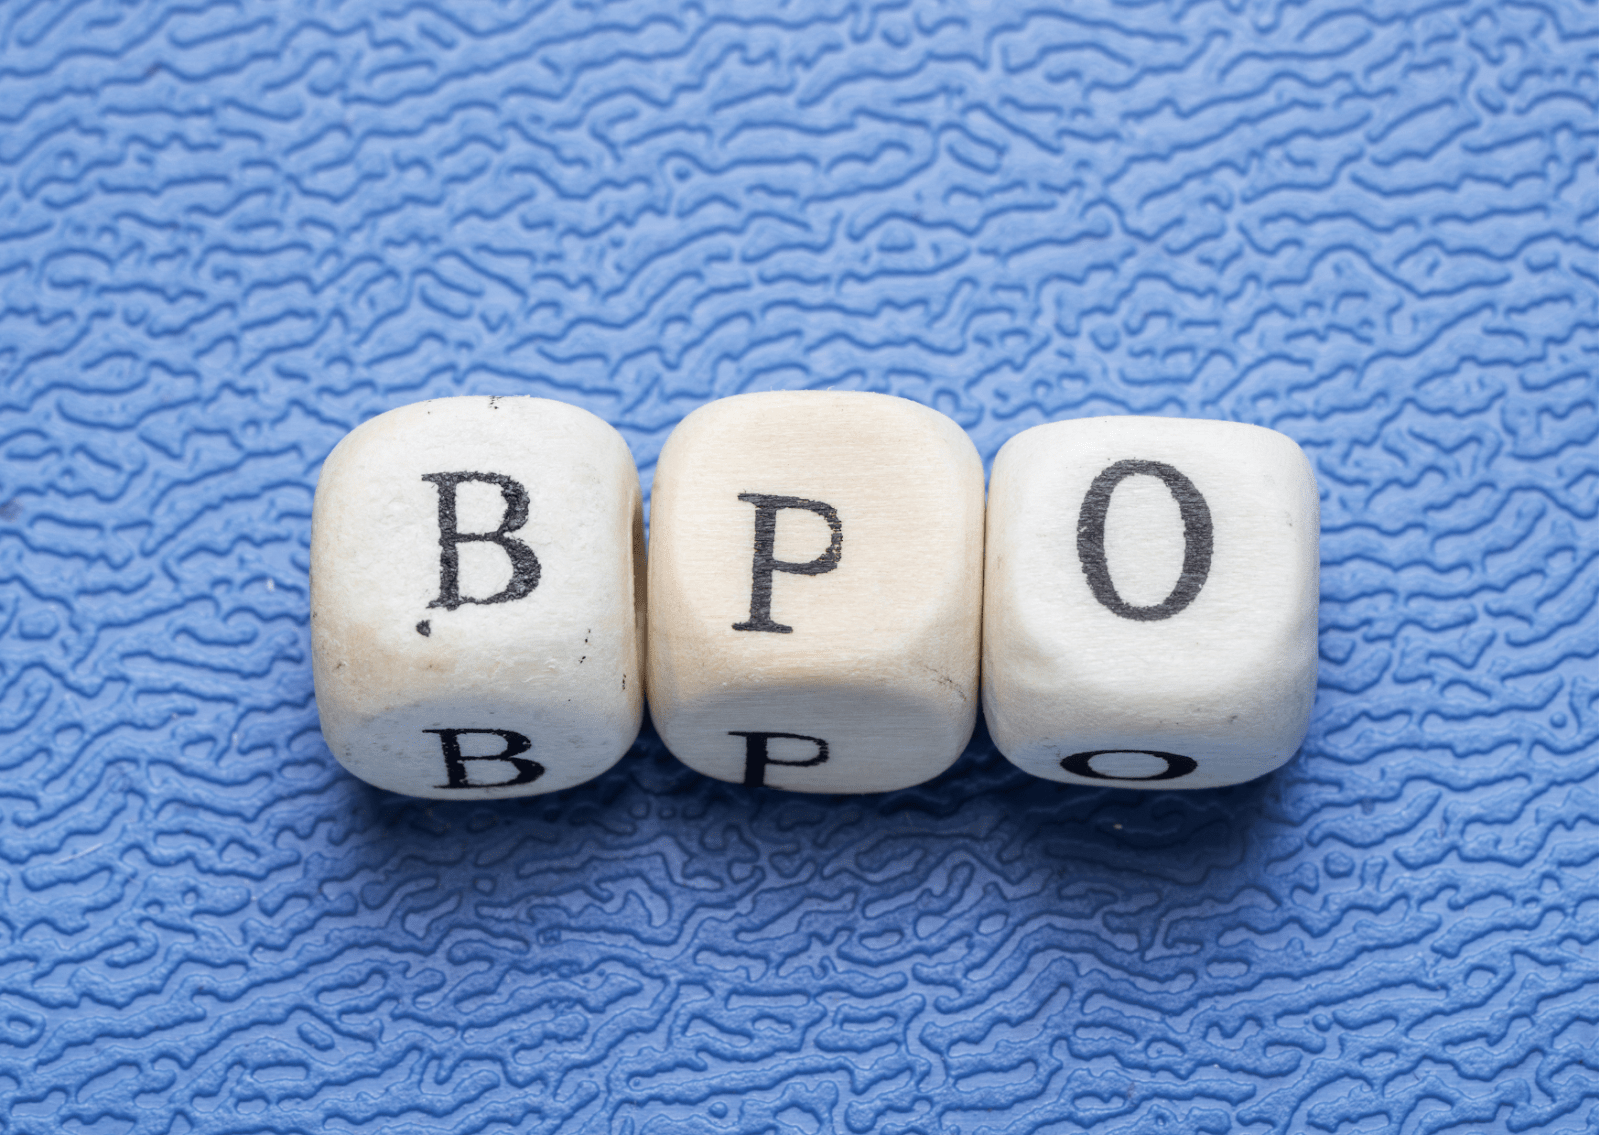 Em um fundo texturizado azul, vemos três dadinhos de letra, que formam a sigla BPO, em alusão à terceirização.